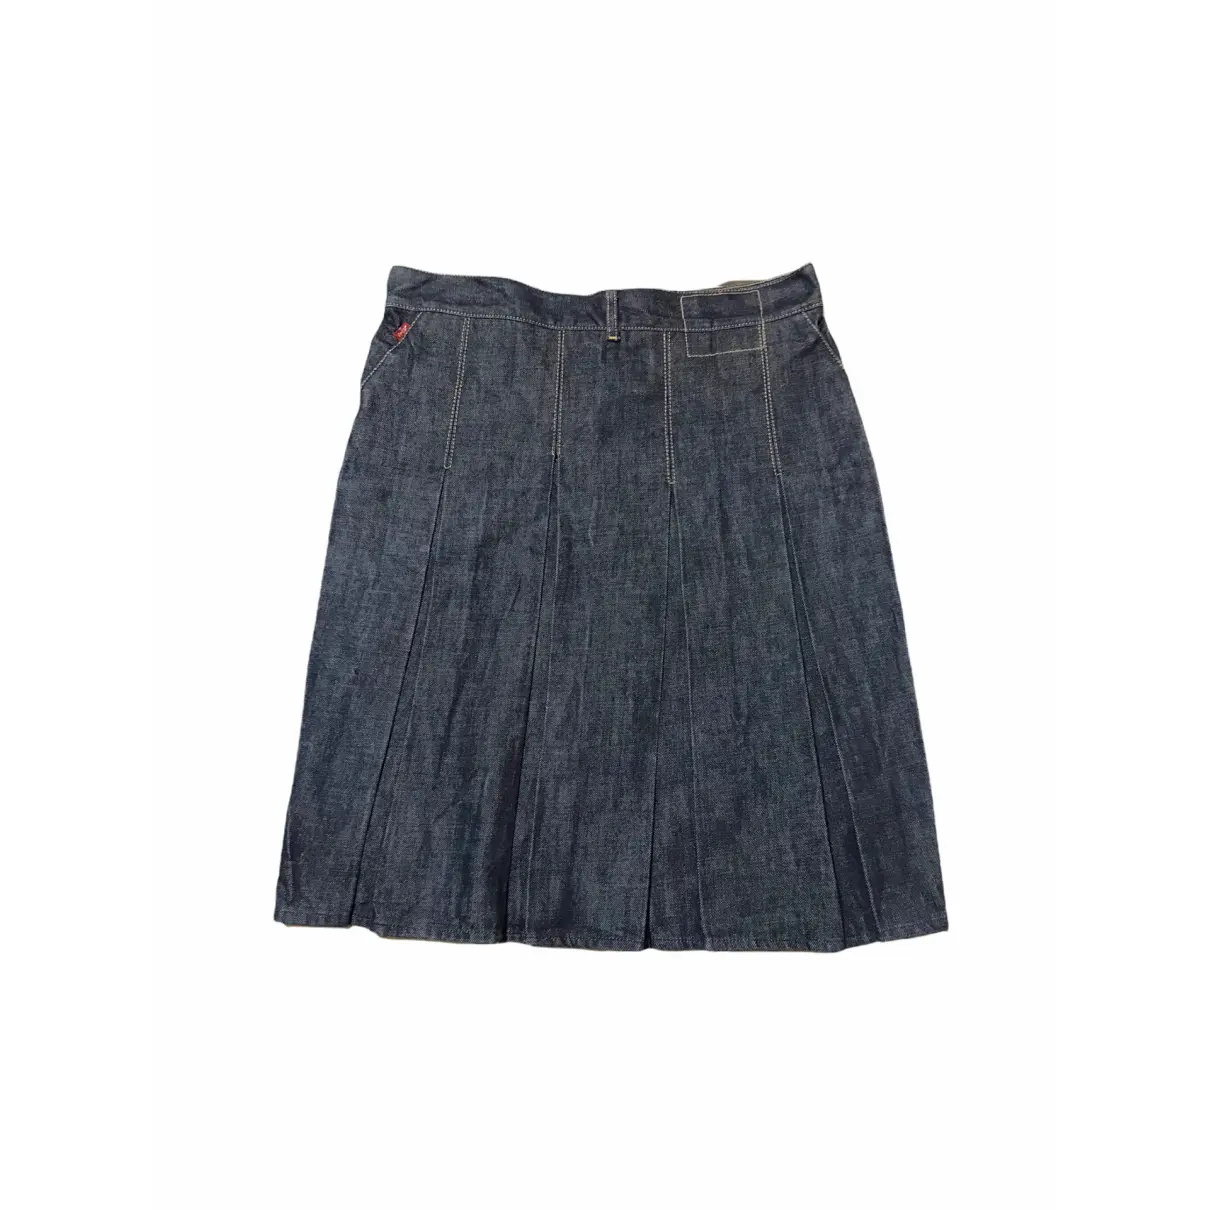 Buy Levi's Skirt online